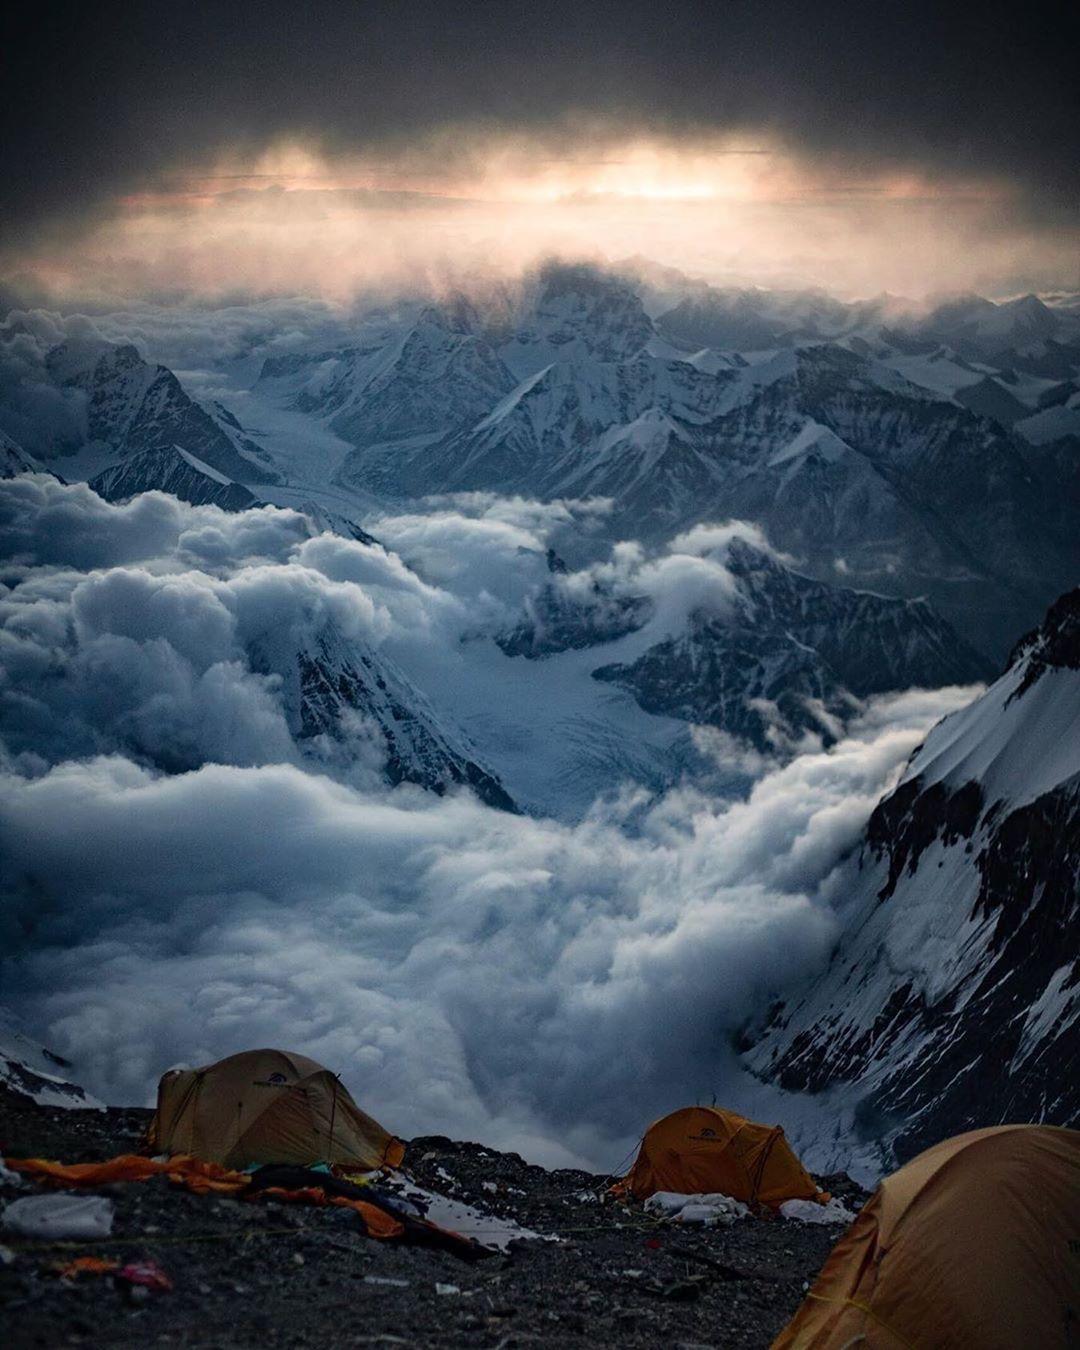  珠峰上的风光，来自摄影师Renan Ozturk。 